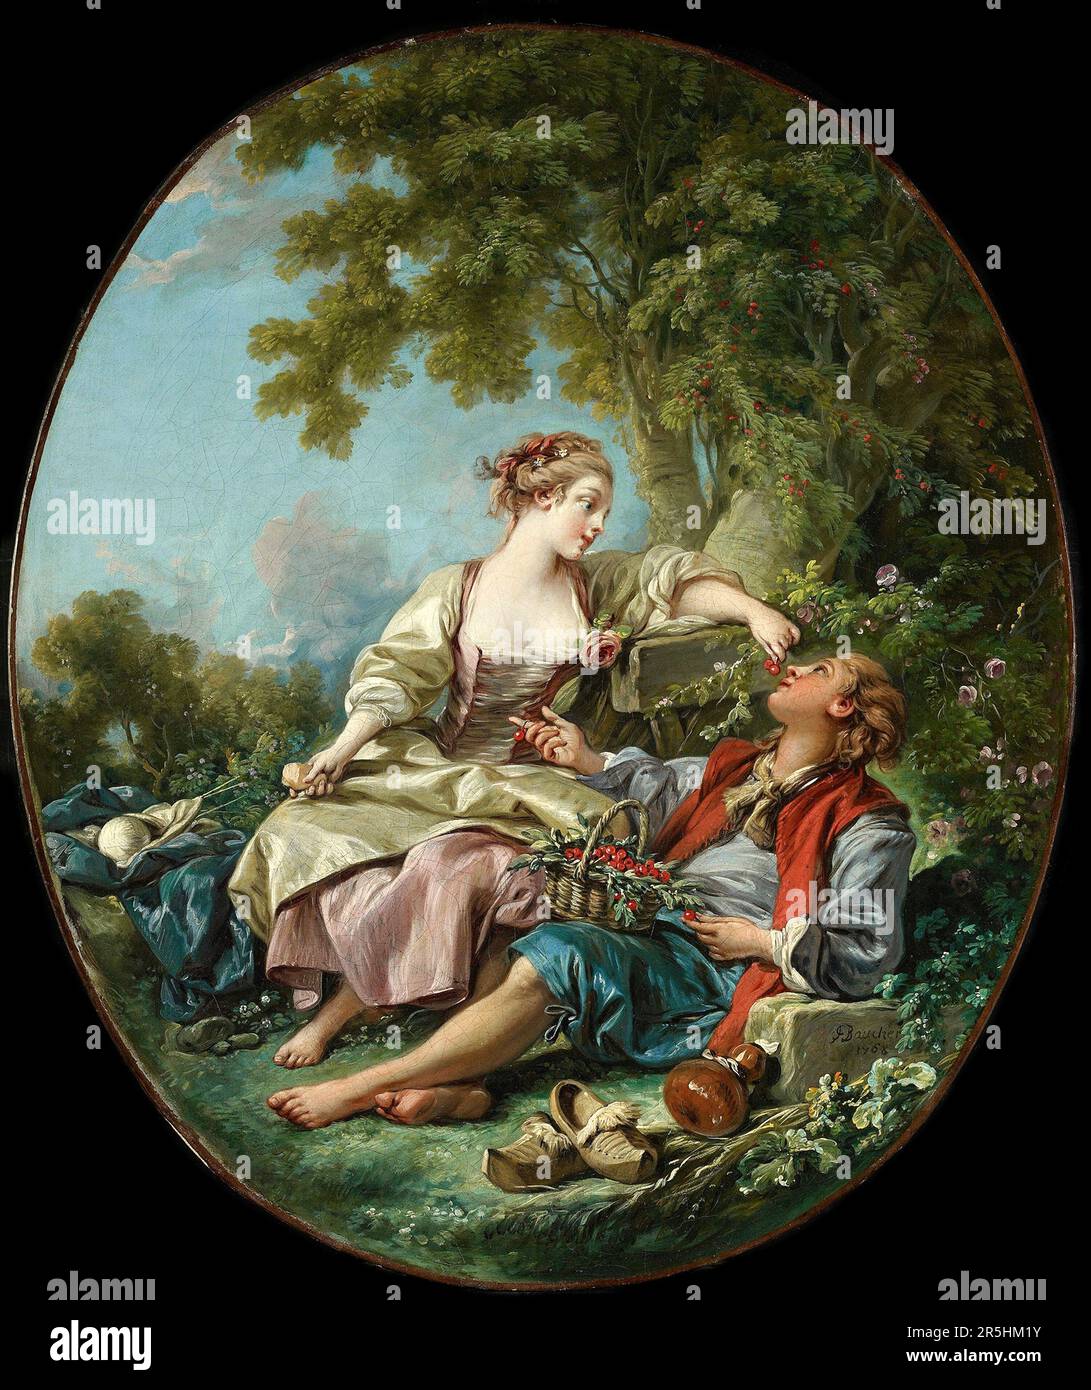 Les Sabots, gemalt 1768 von Francois Bouchard. Obwohl heute kaum bekannt, war Francois Boucher einer der berühmtesten Maler des 18. Jahrhunderts in Frankreich. Er malte klassische Themen im Barock- und Rokoko-Stil. Seine Schirmherrin war Madame de Pompadour, und sein Werk war so beliebt, dass er schließlich Premier Peintre du ROI (erster Maler des Königs) wurde, ein angesehener Gerichtsstand im Antiker-Regime. Stockfoto